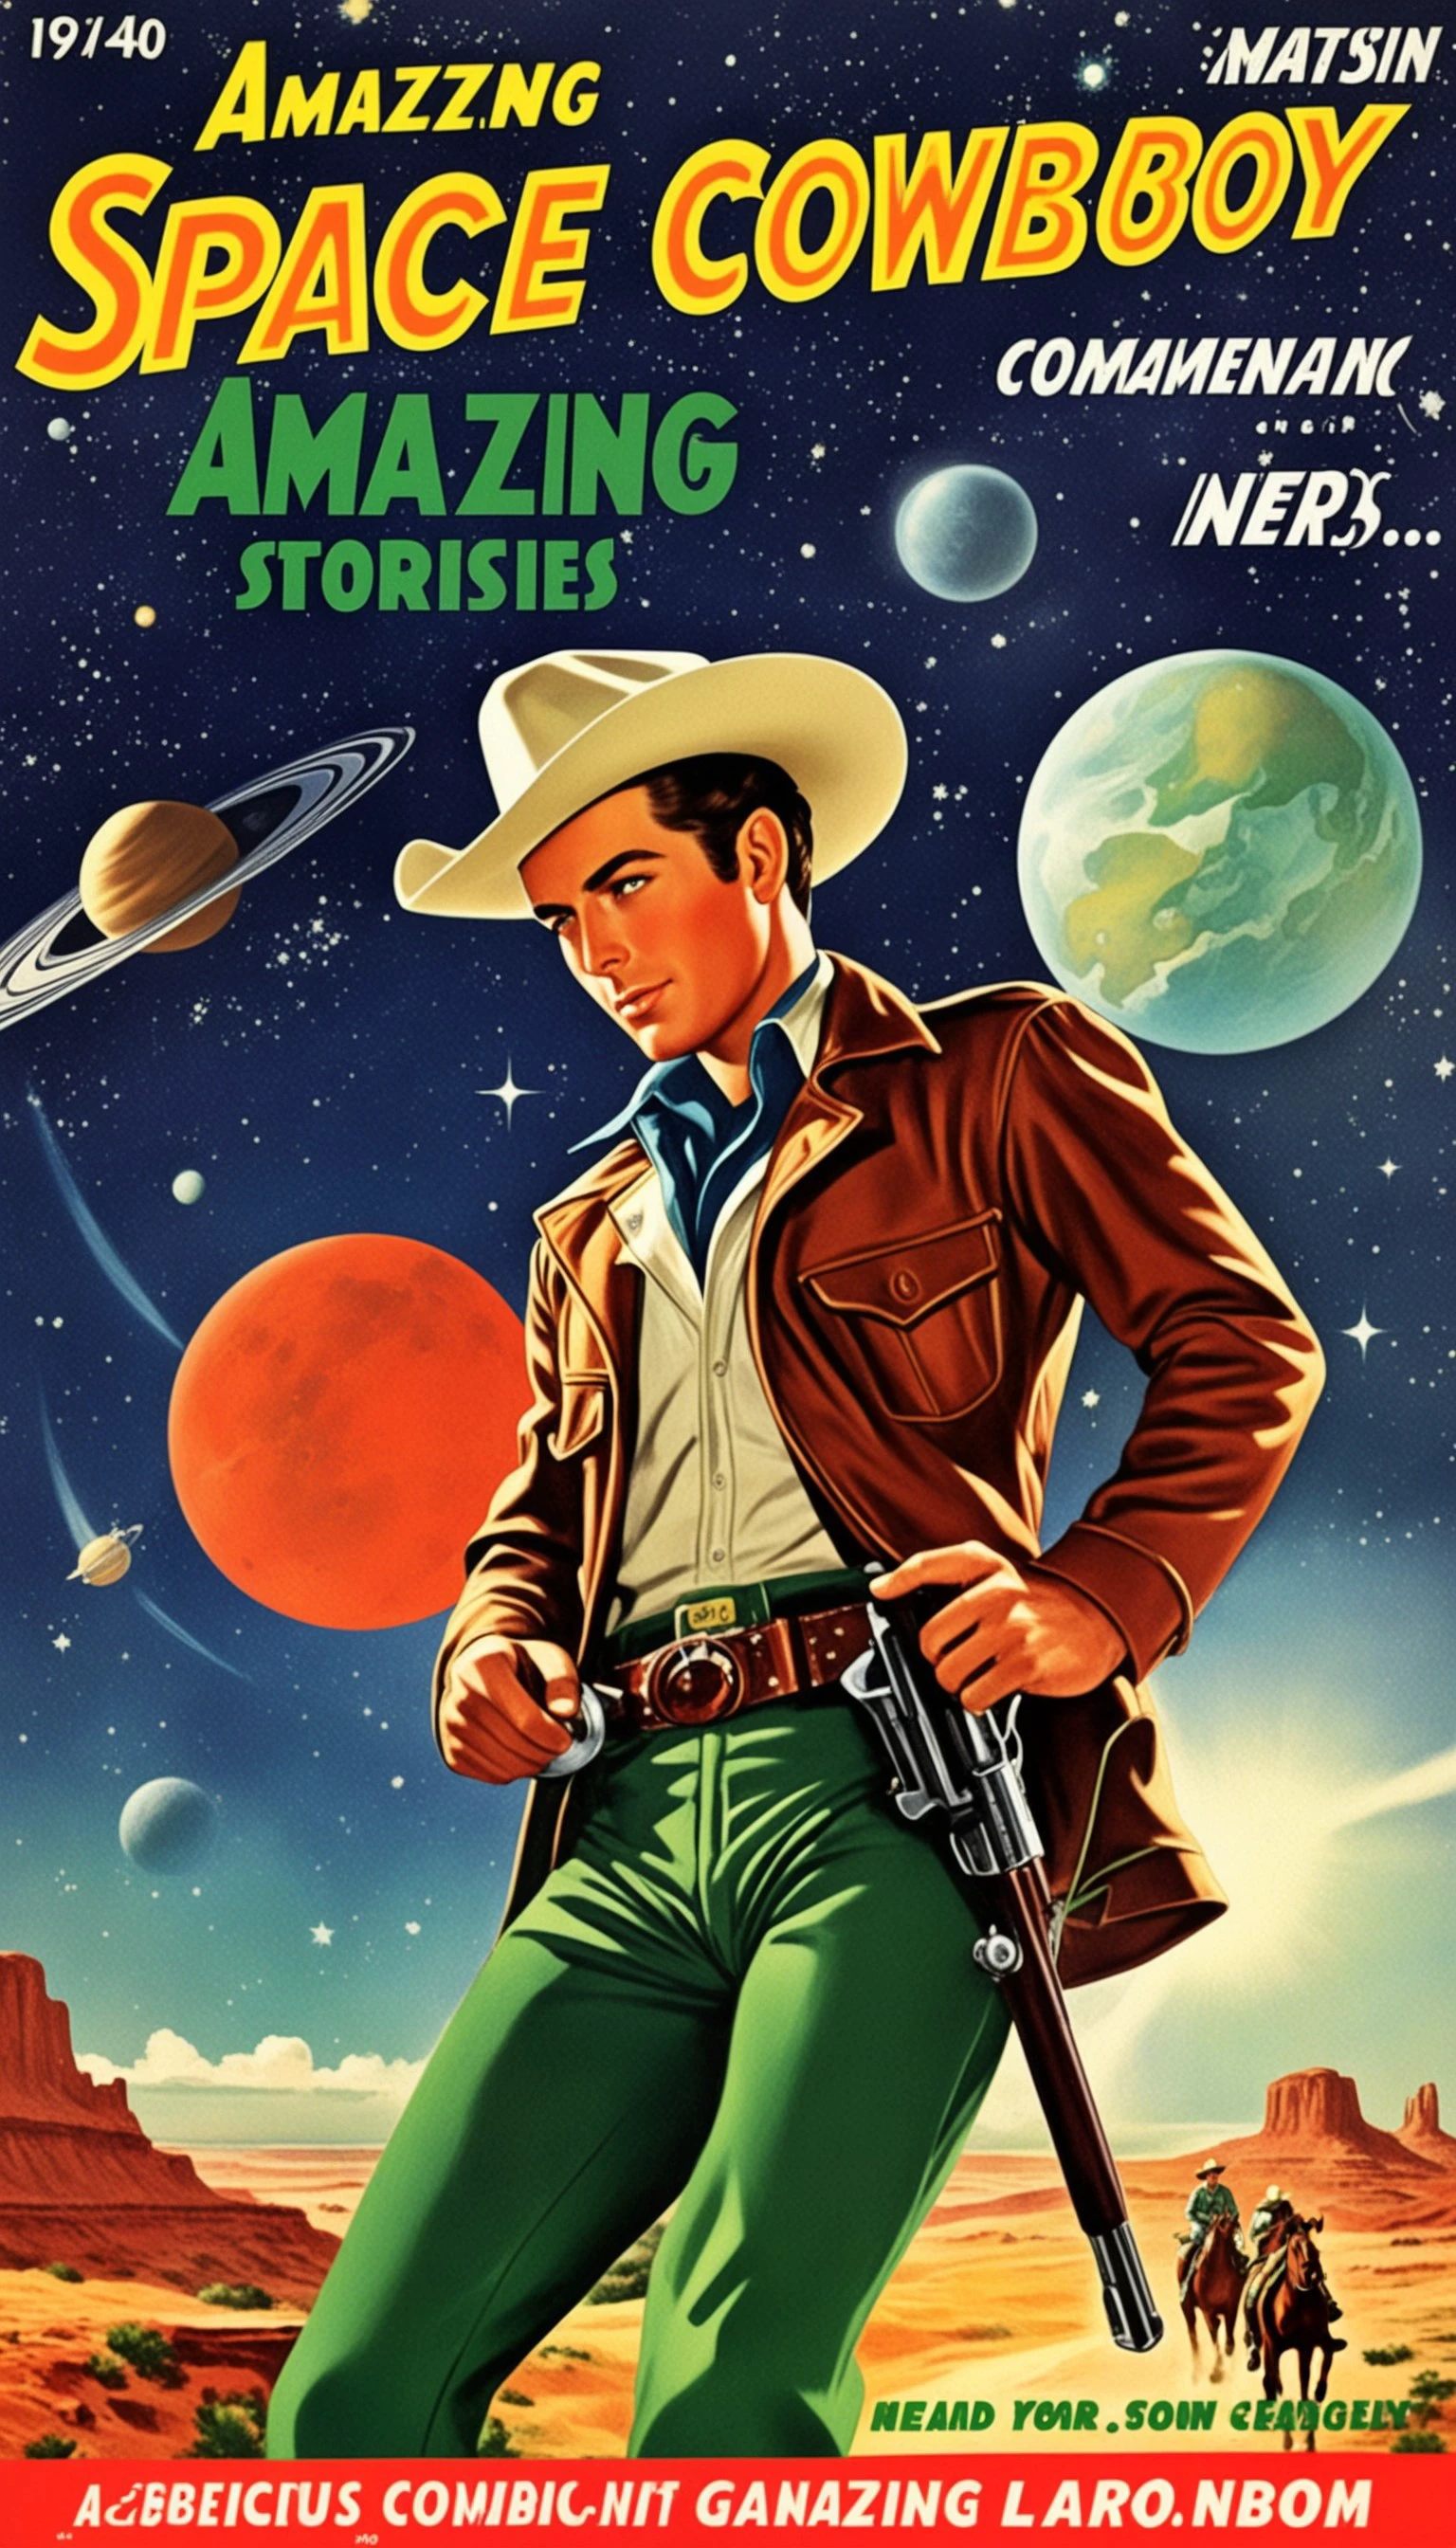 обложка для комикса, Обложка комикса о космическом ковбое, 1 ковбой в шляпе в стиле удивительных историй, 1940-е 1950-е годы, красный и зеленый, комическое искусство, реалистичные жанровые сцены, романтизированный реализм, динамика